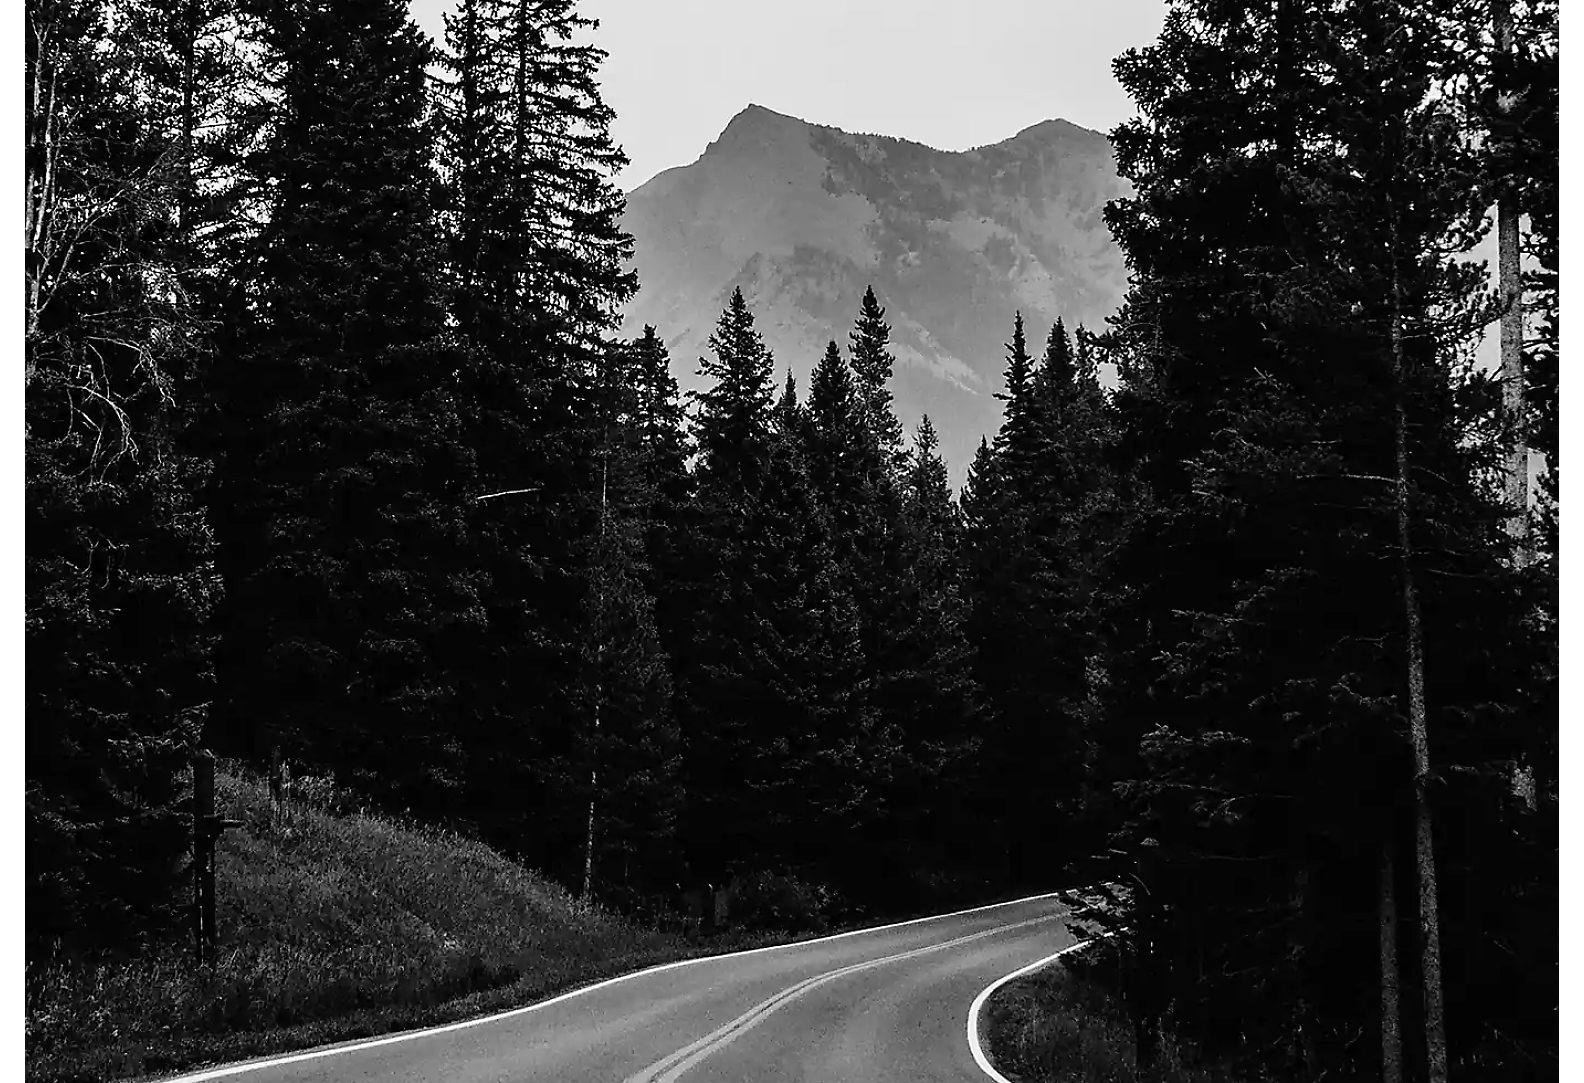 Estrada com duas faixas a atravessar uma floresta com o pico de uma montanha em fundo, a preto e branco.